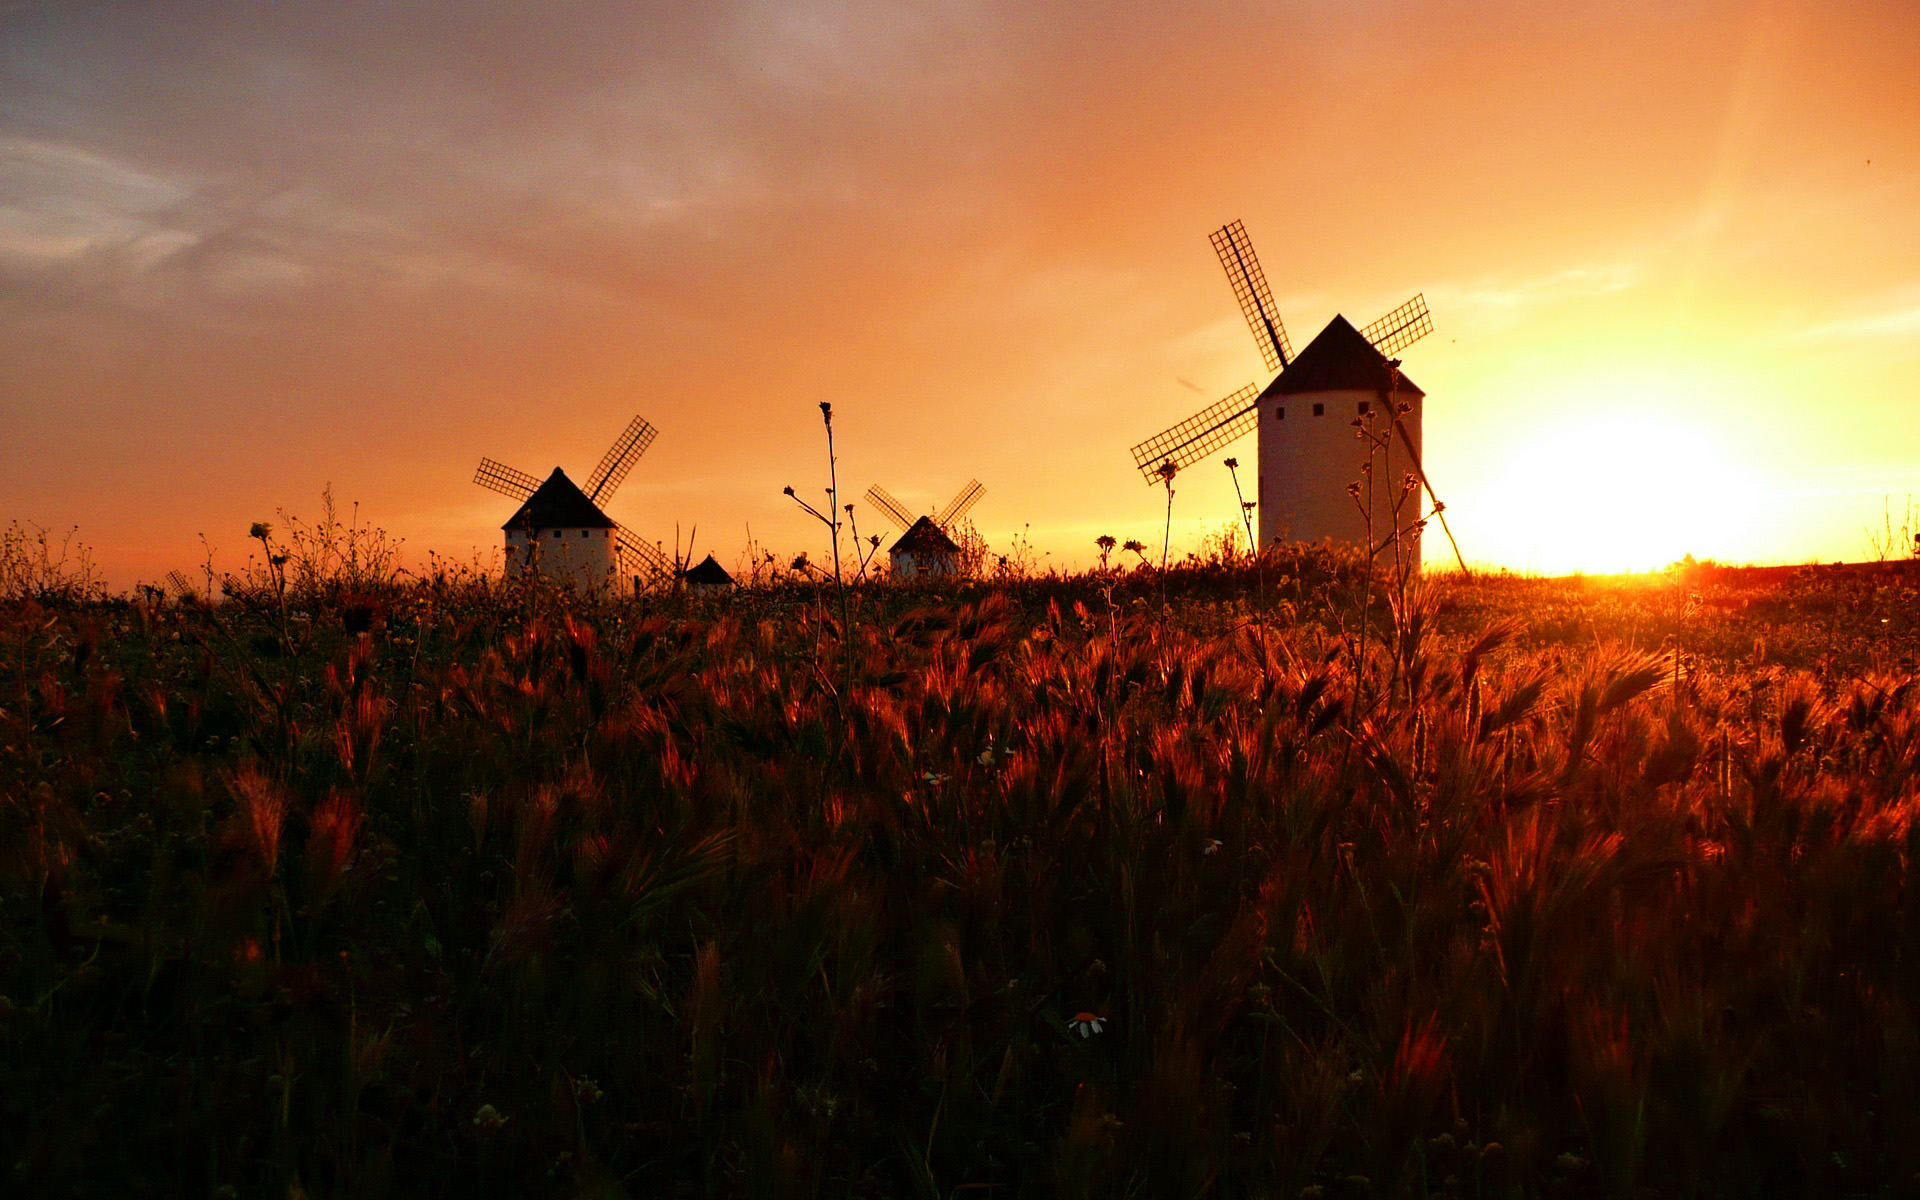 Dutch Windmill Wallpaper